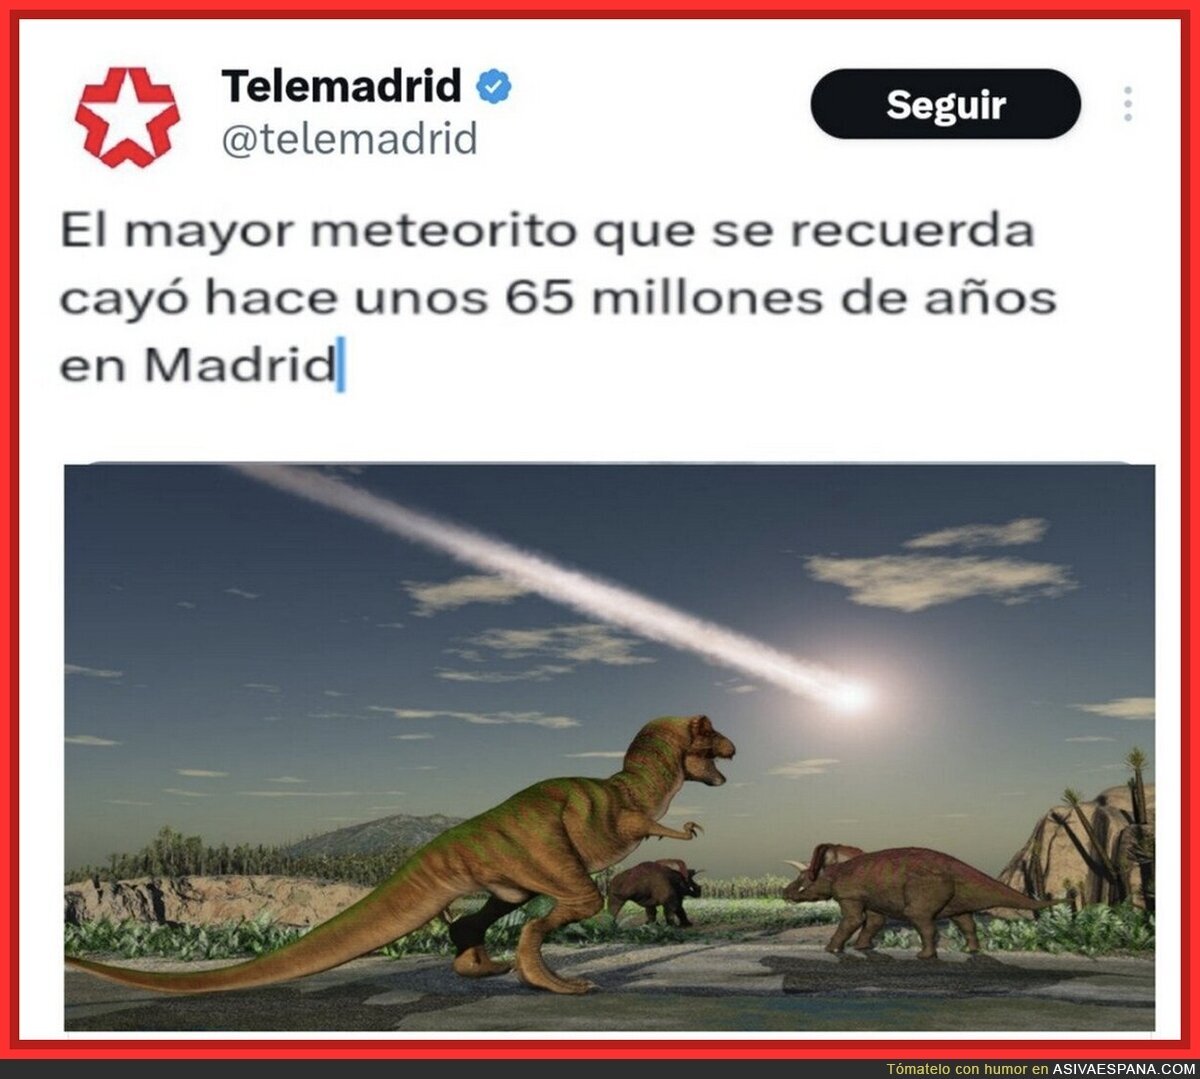 Los mejroes meteoritos: los de Madrid